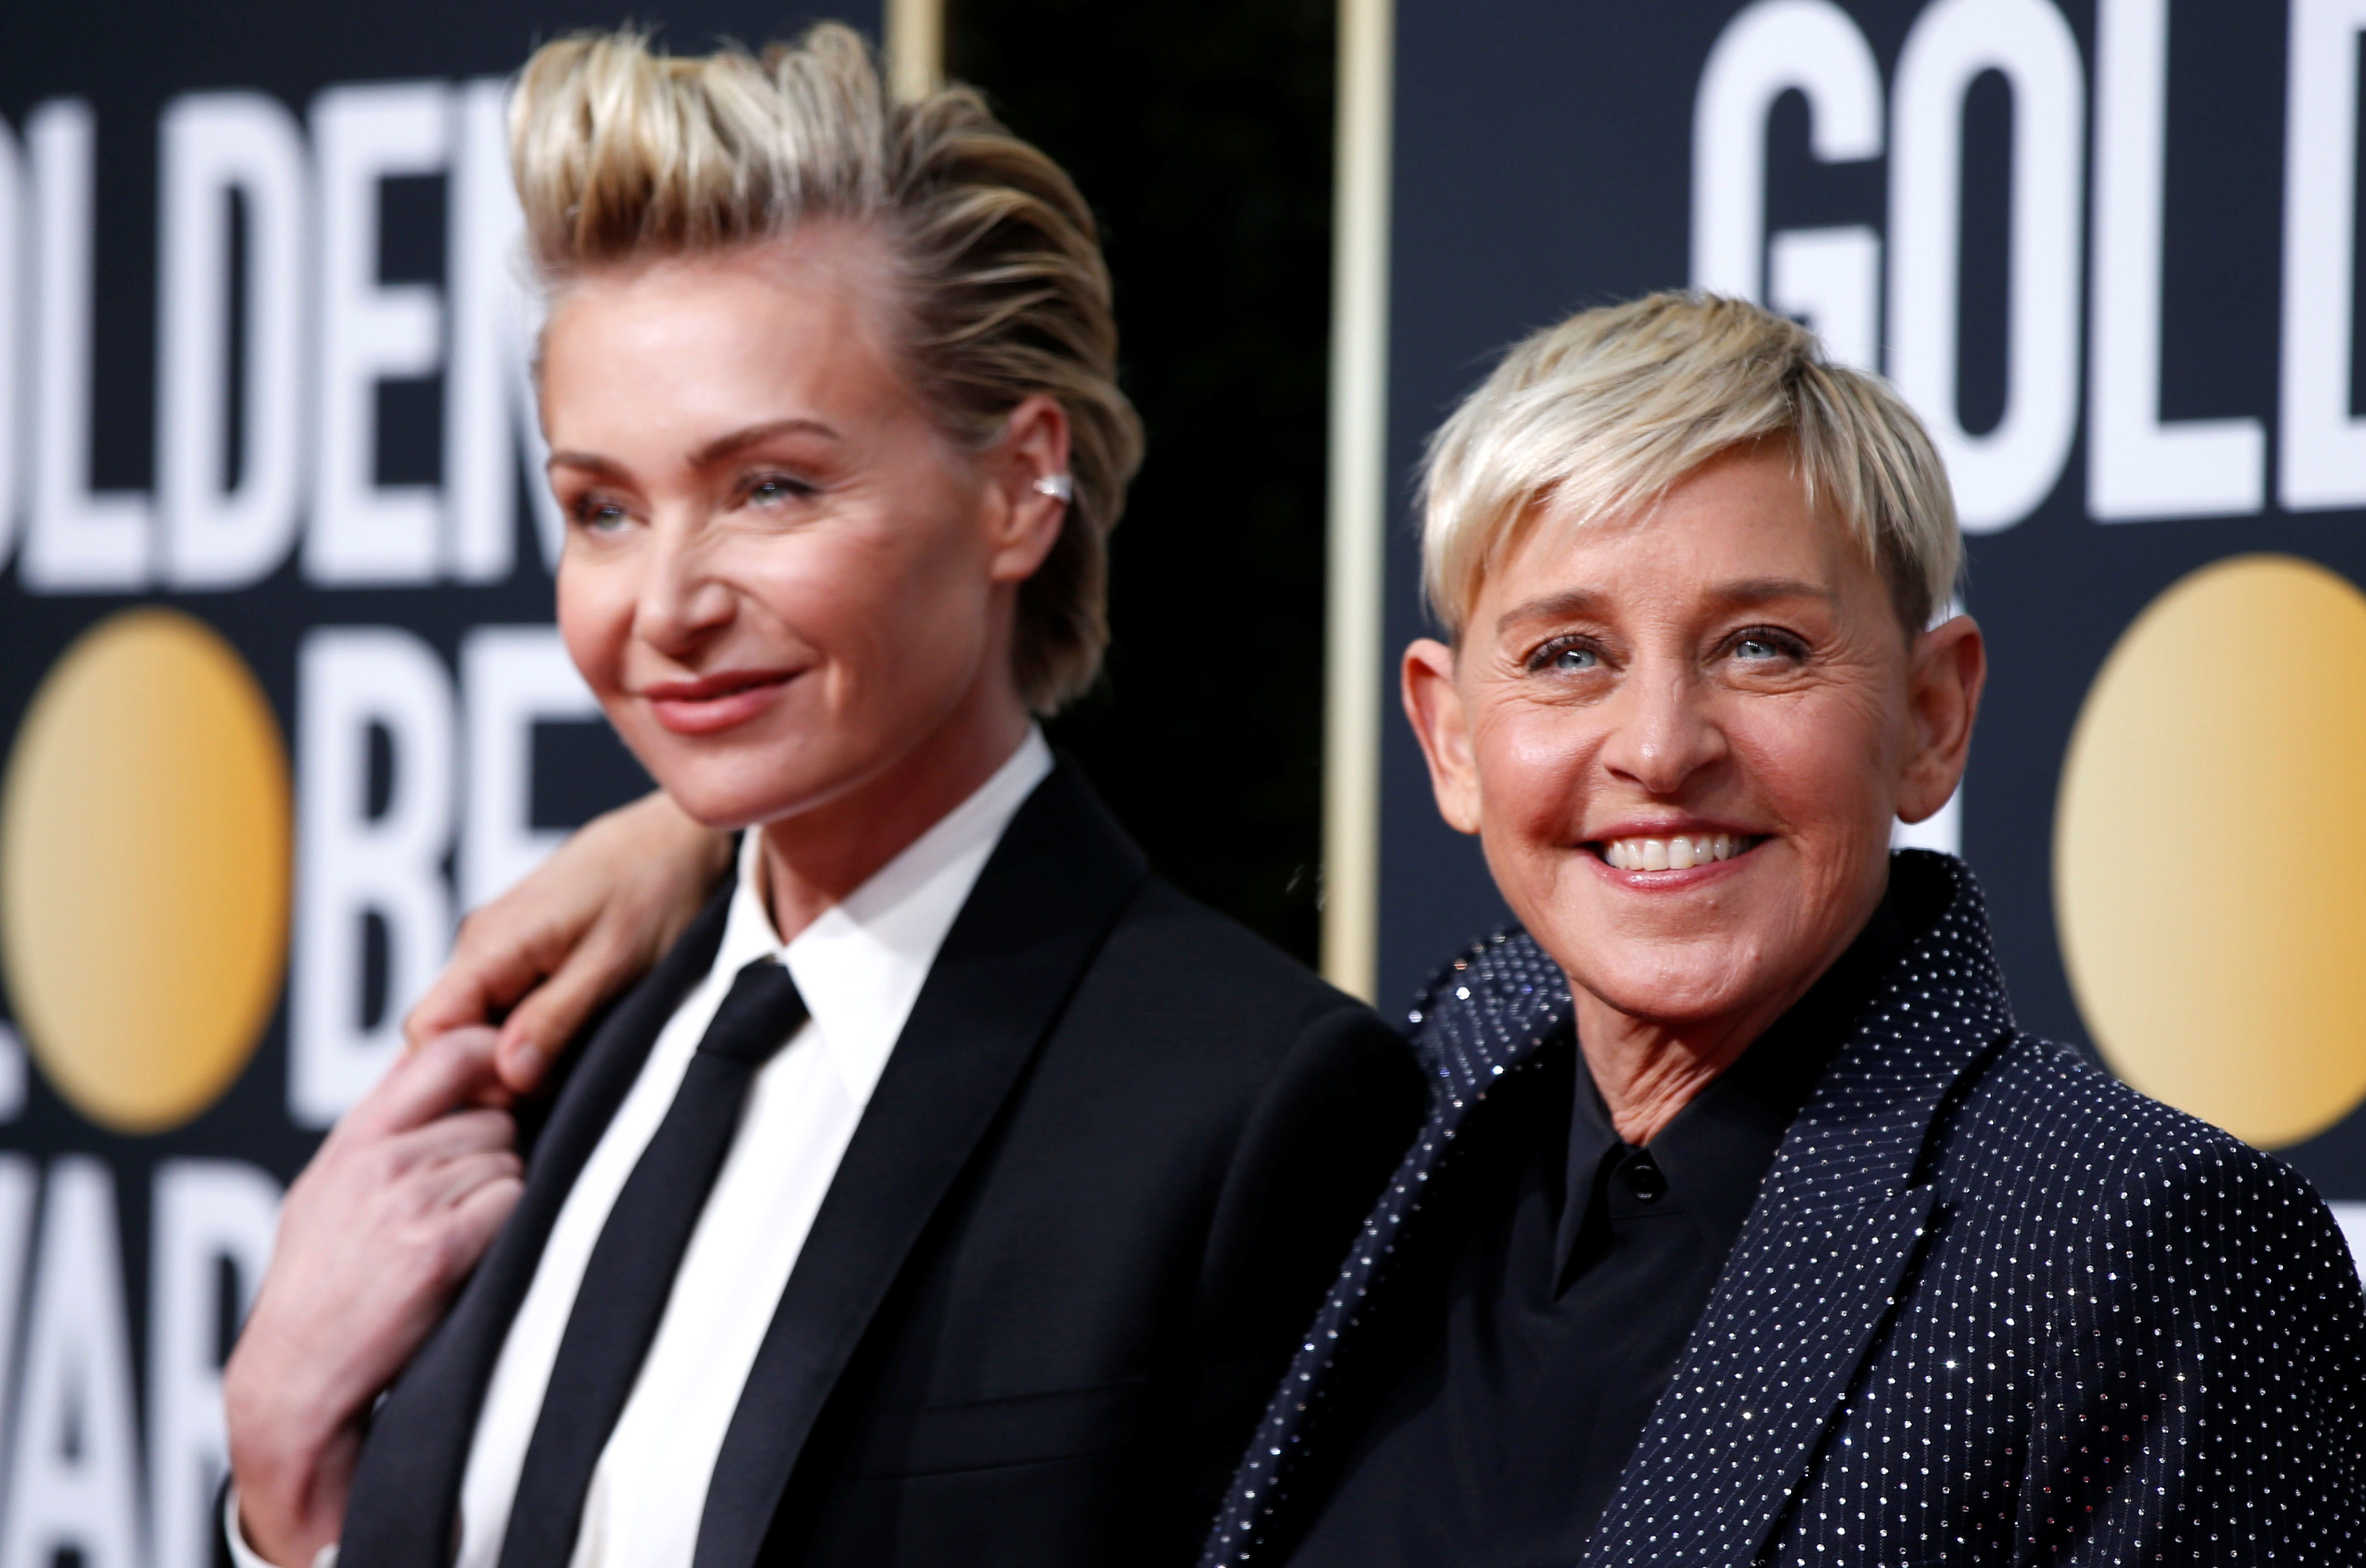 Si DeGeneres abandona el show traería menos problemas, según la fuente (Foto: REUTERS/Mario Anzuoni)